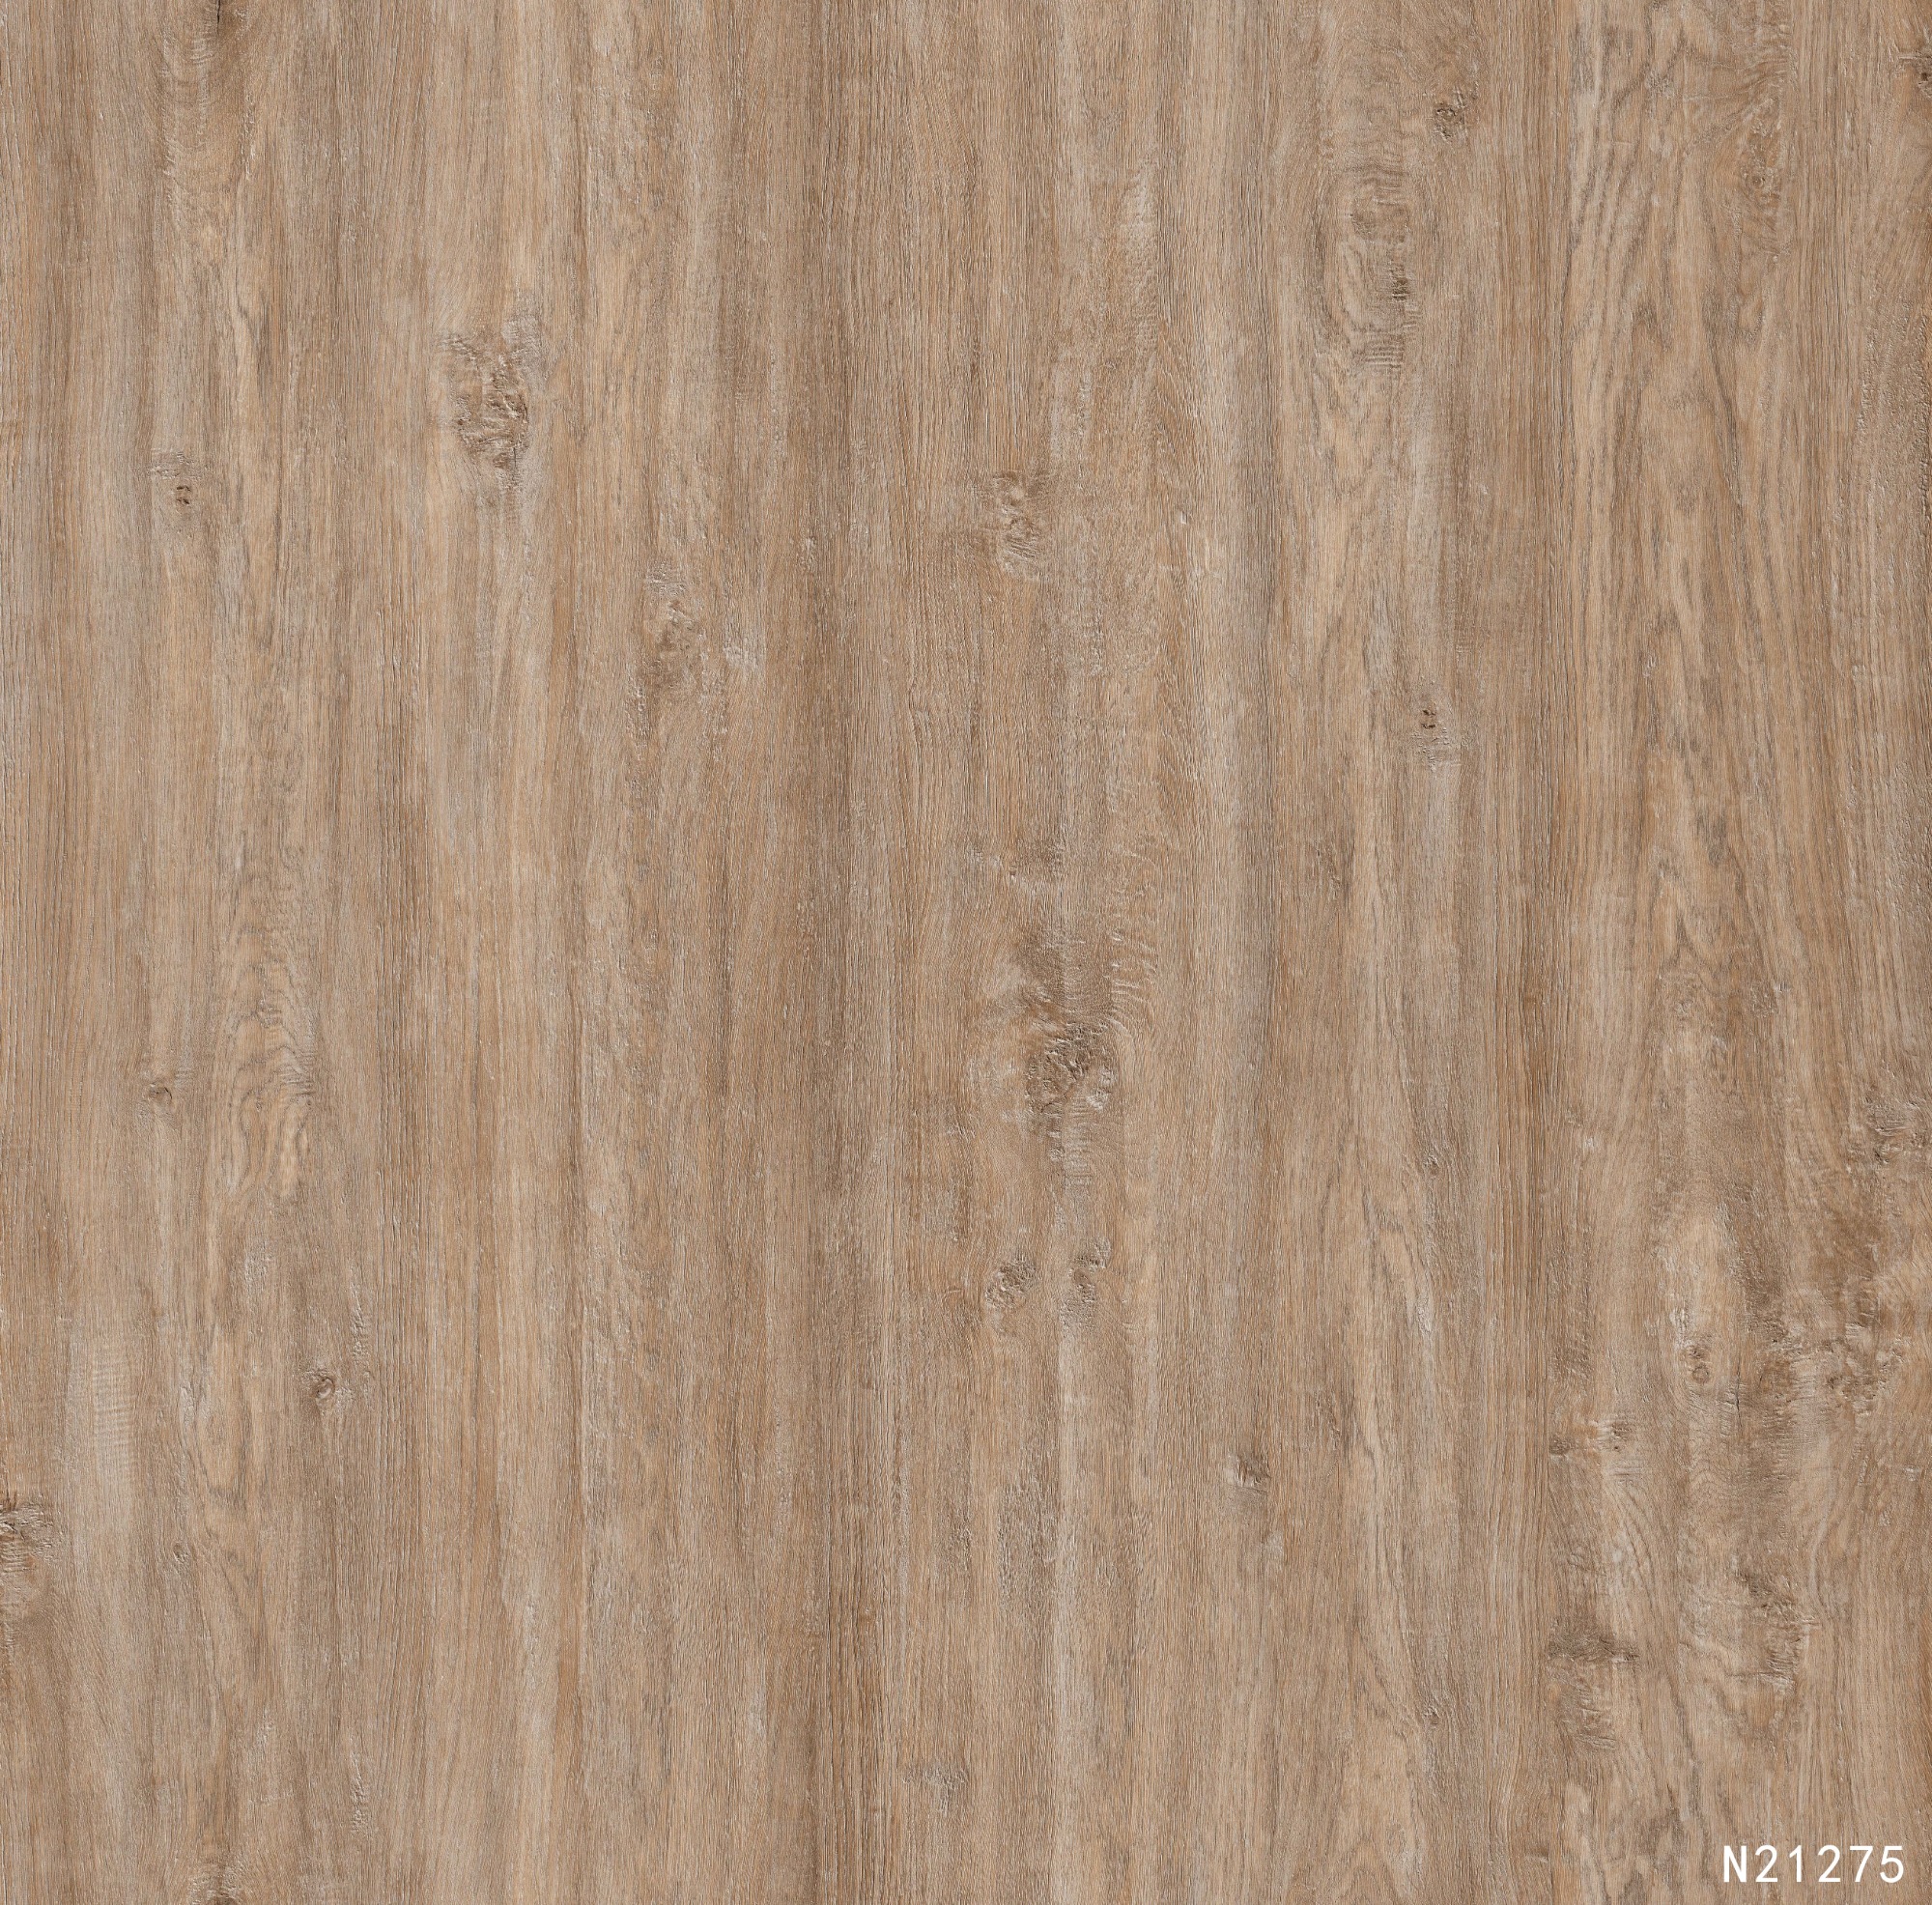 N21275 Melamine paper with wood grain